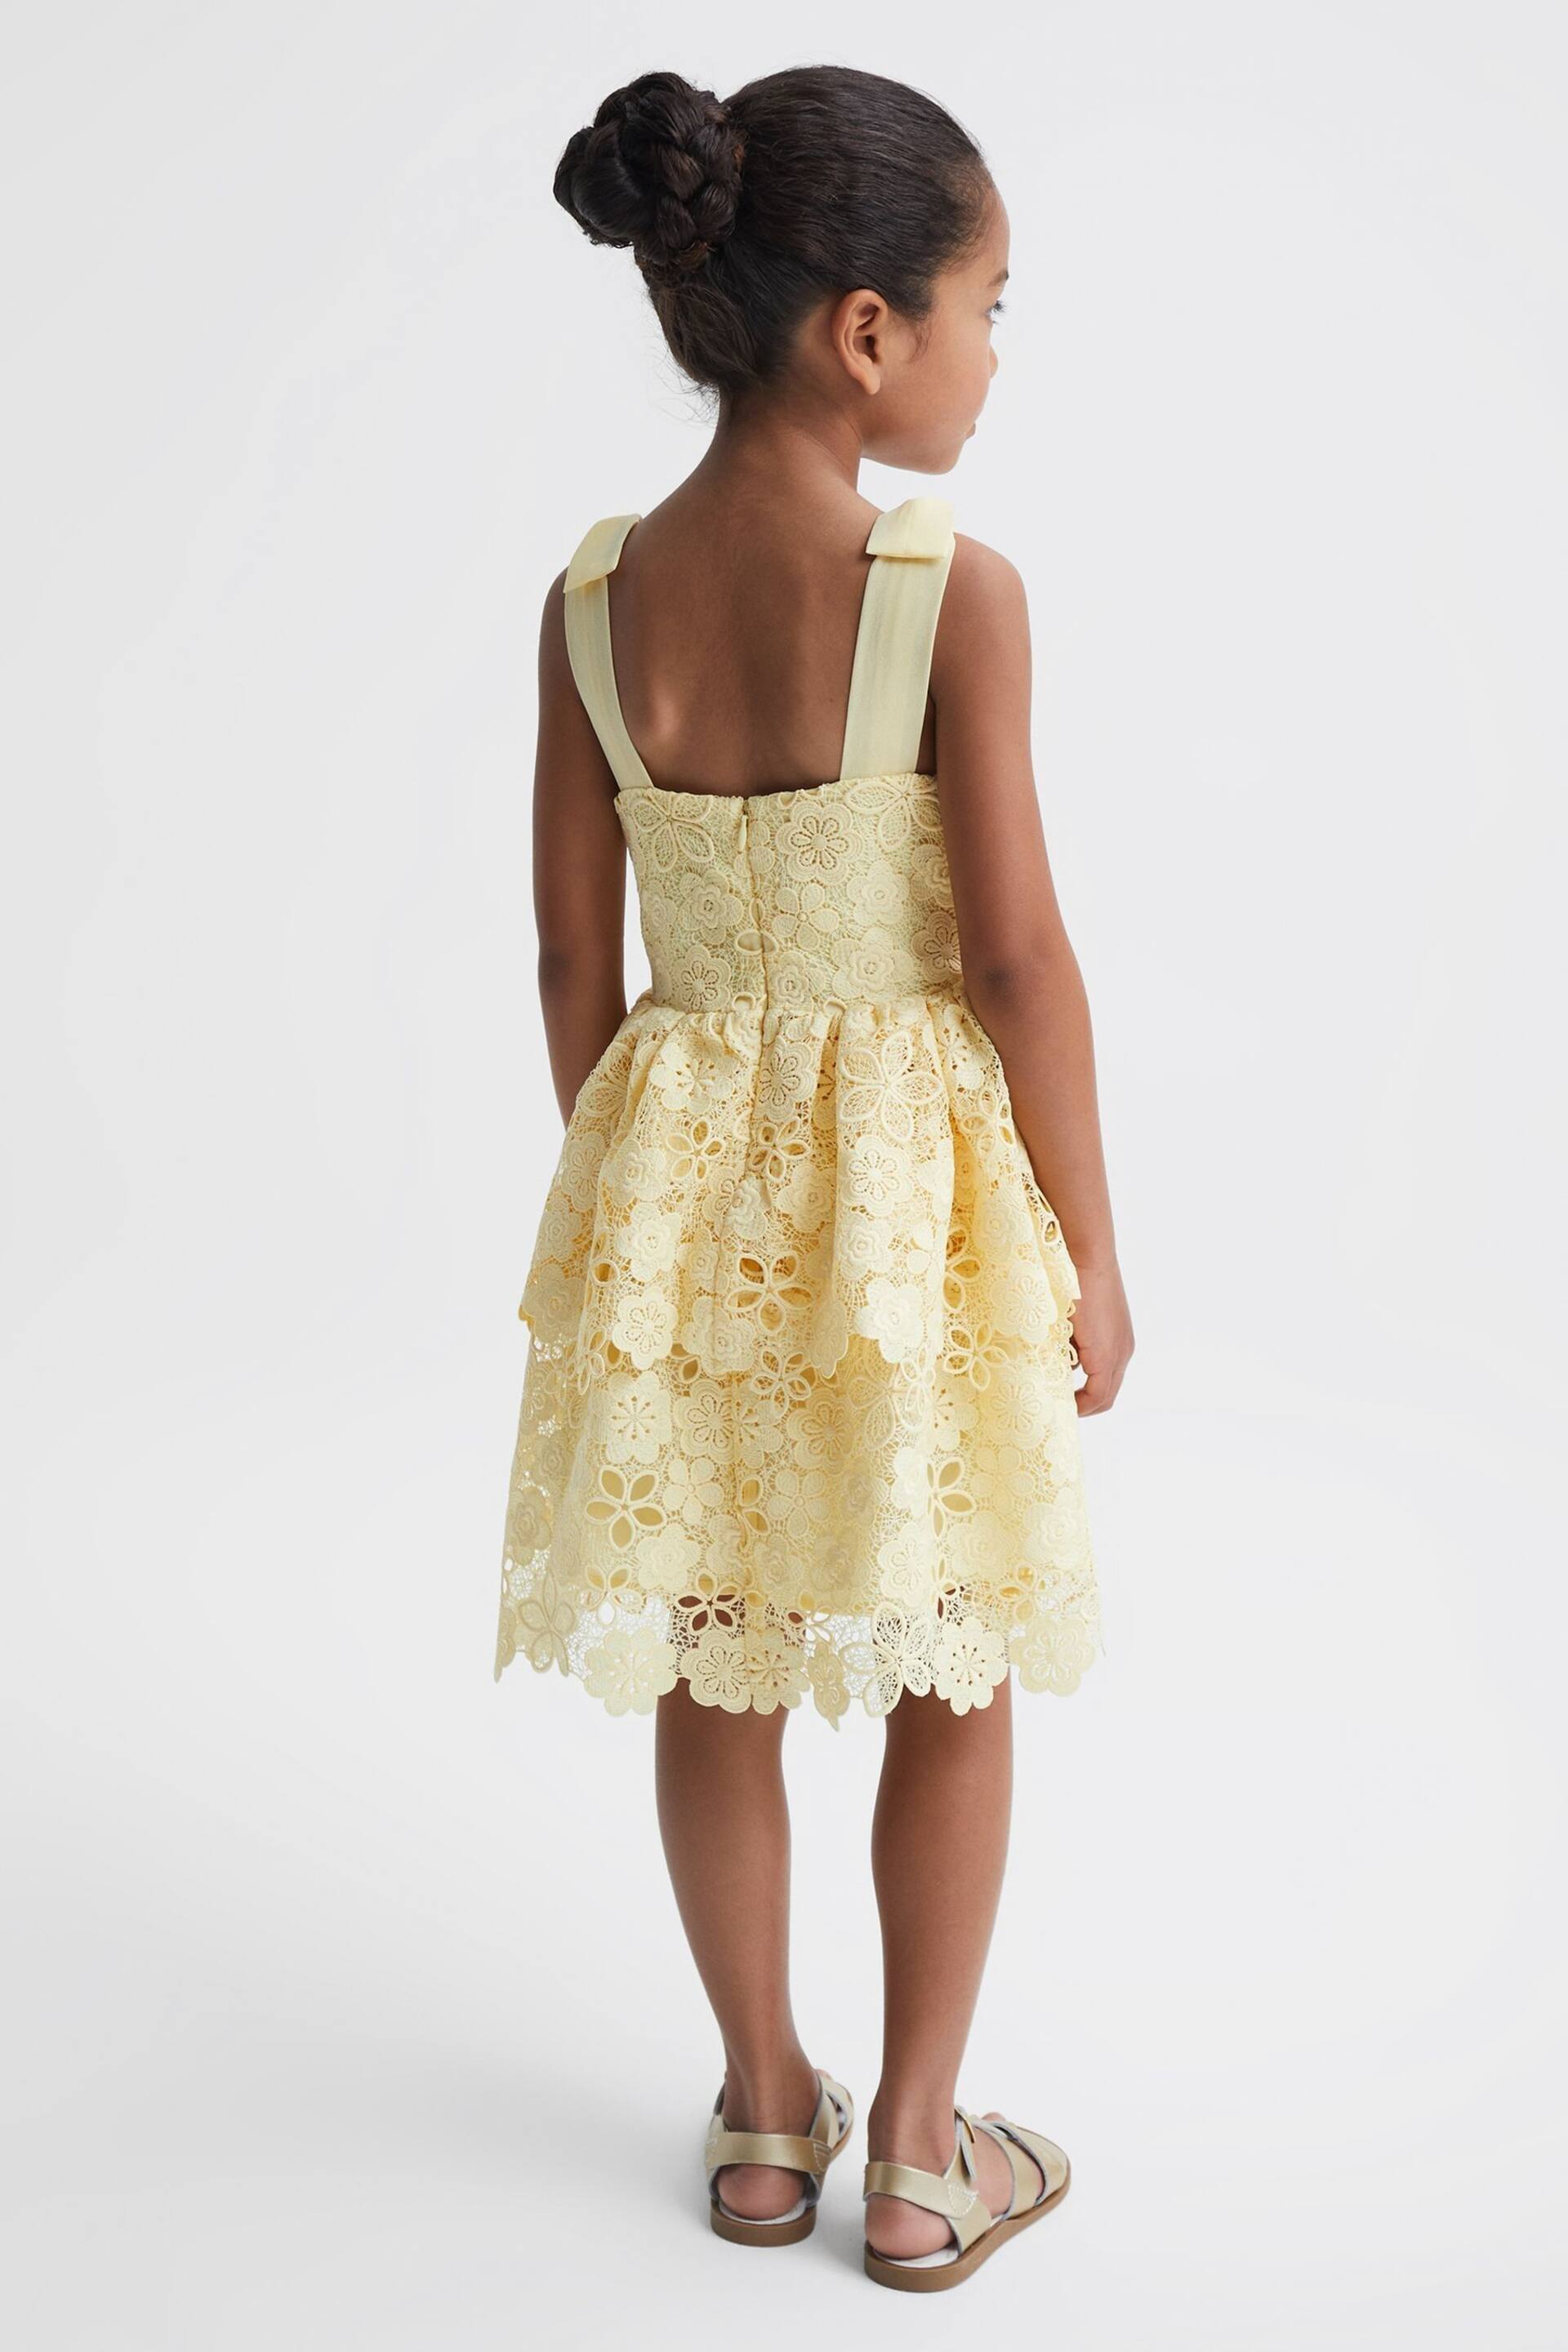 Reiss Lemon Bethany Senior Bow Strap Lace Dress - Image 5 of 6